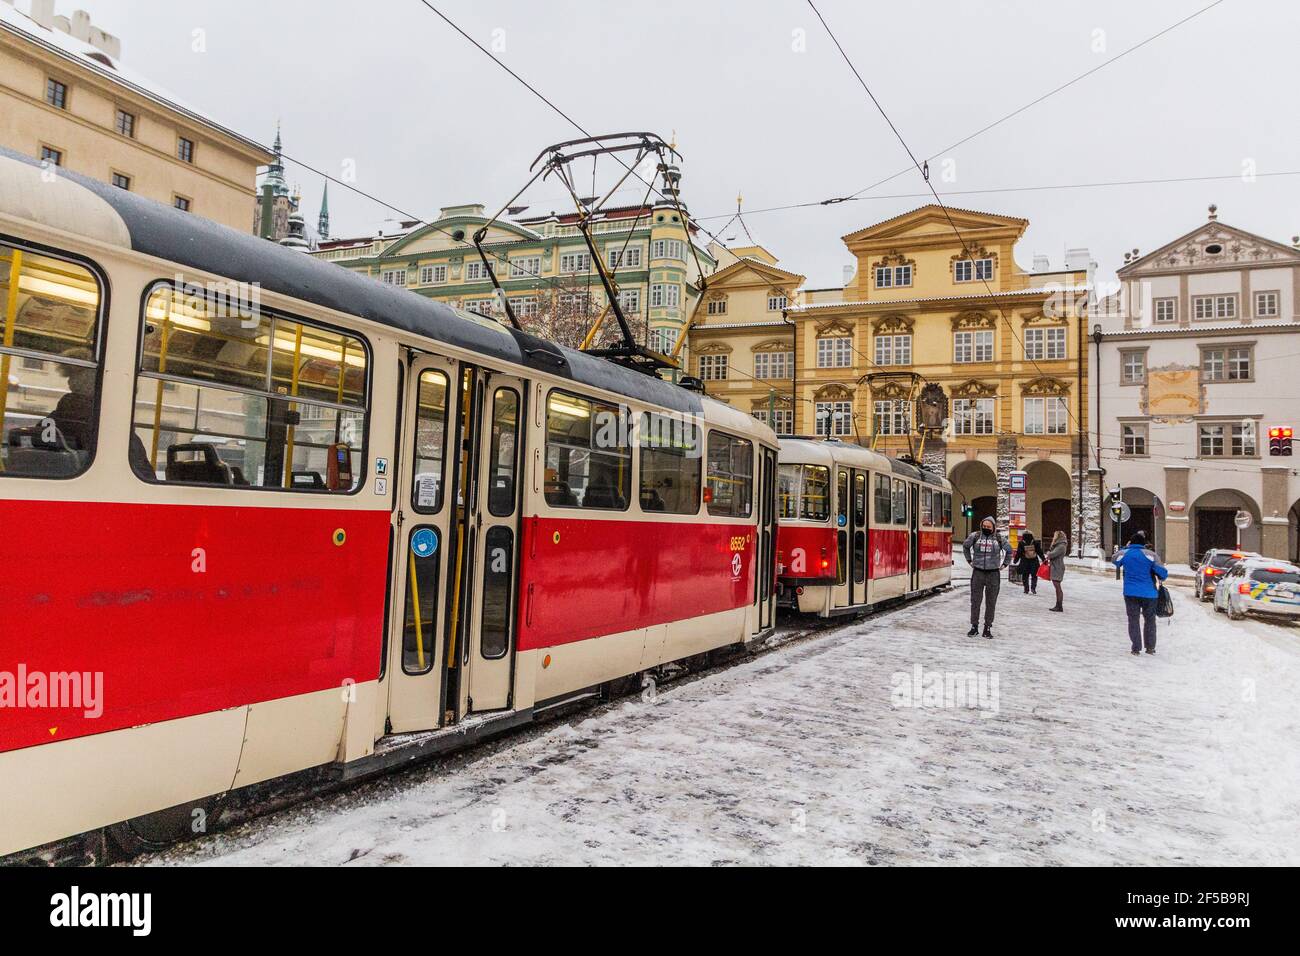 PRAGUE, CZECHIA - FEBRUARY 8, 2021: Tram stop at Malostranske namesti square in Prague, Czech Republic Stock Photo